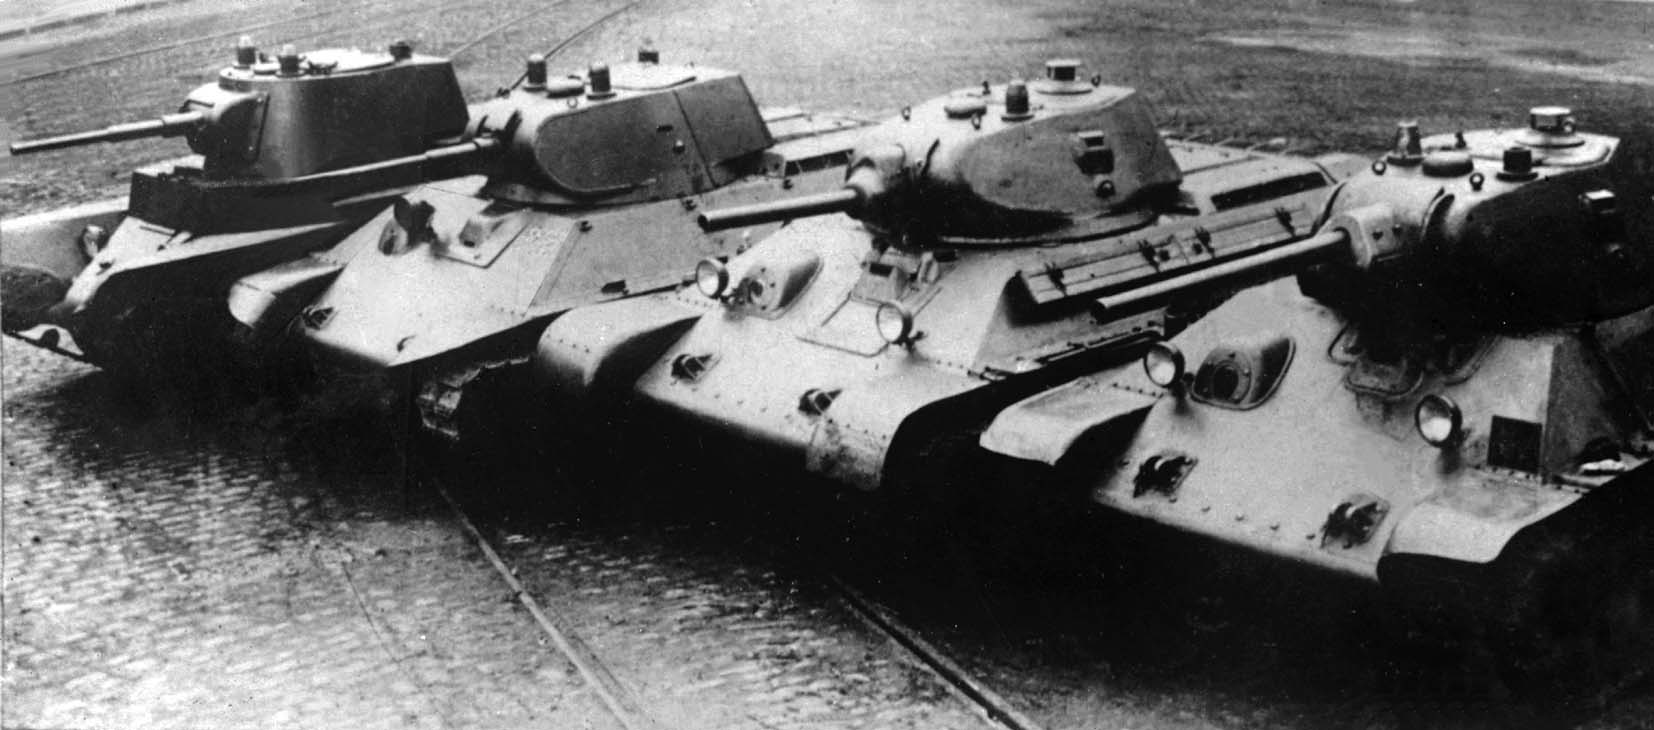 Les chars récents équipant l'armée rouge au moment de l'invasion : de gauche à droite, un BT-7, le prototype A-20, le T-34 modèle 1940 et le T-34 modèle 1941.